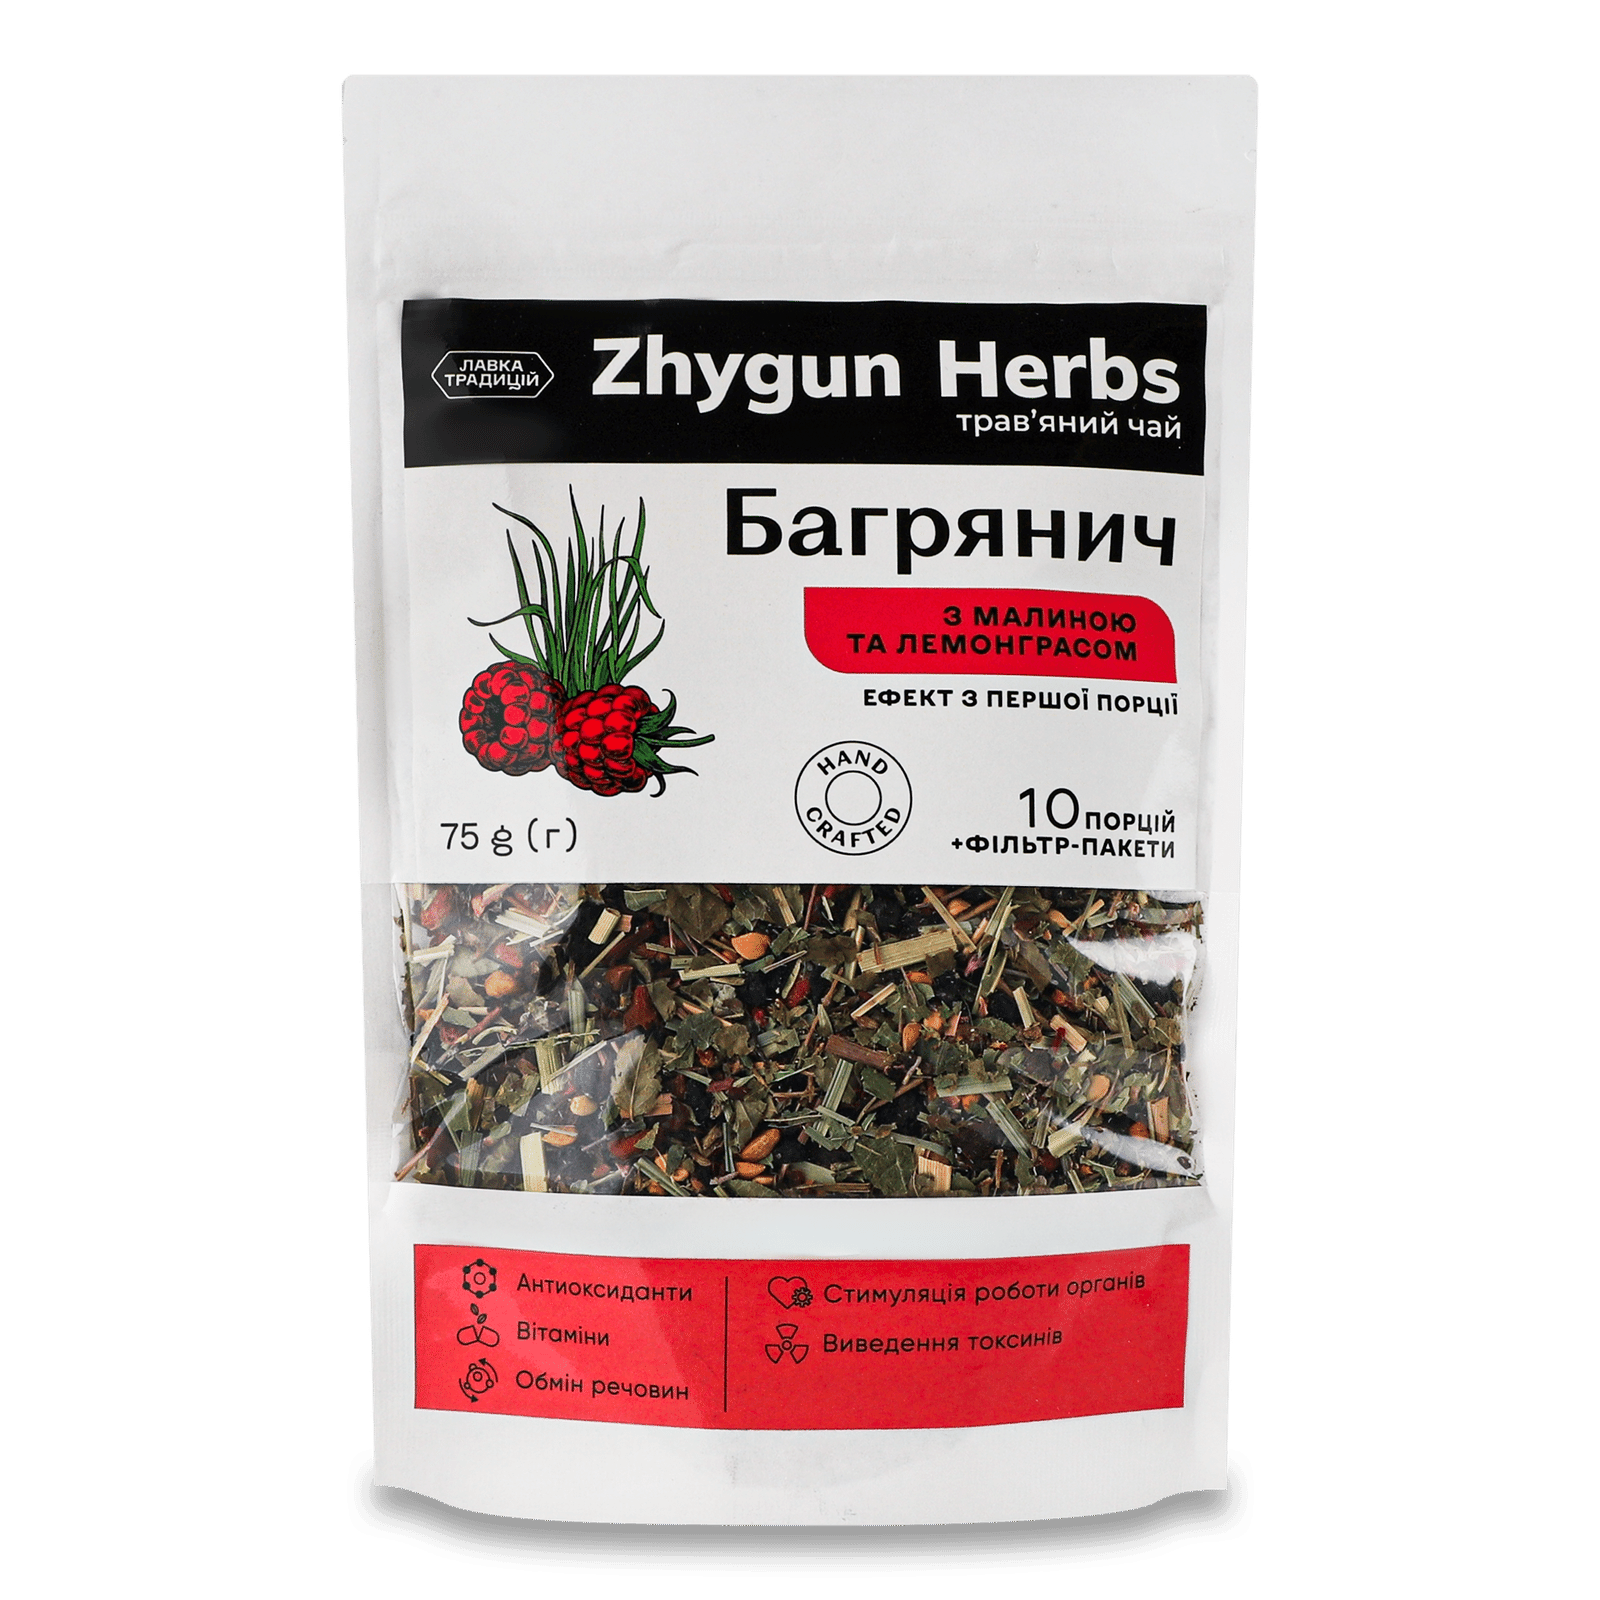 Чай трав’яний «Лавка традицій» Zhygun Herbs «Багрянич» малина та лемонграс - 1